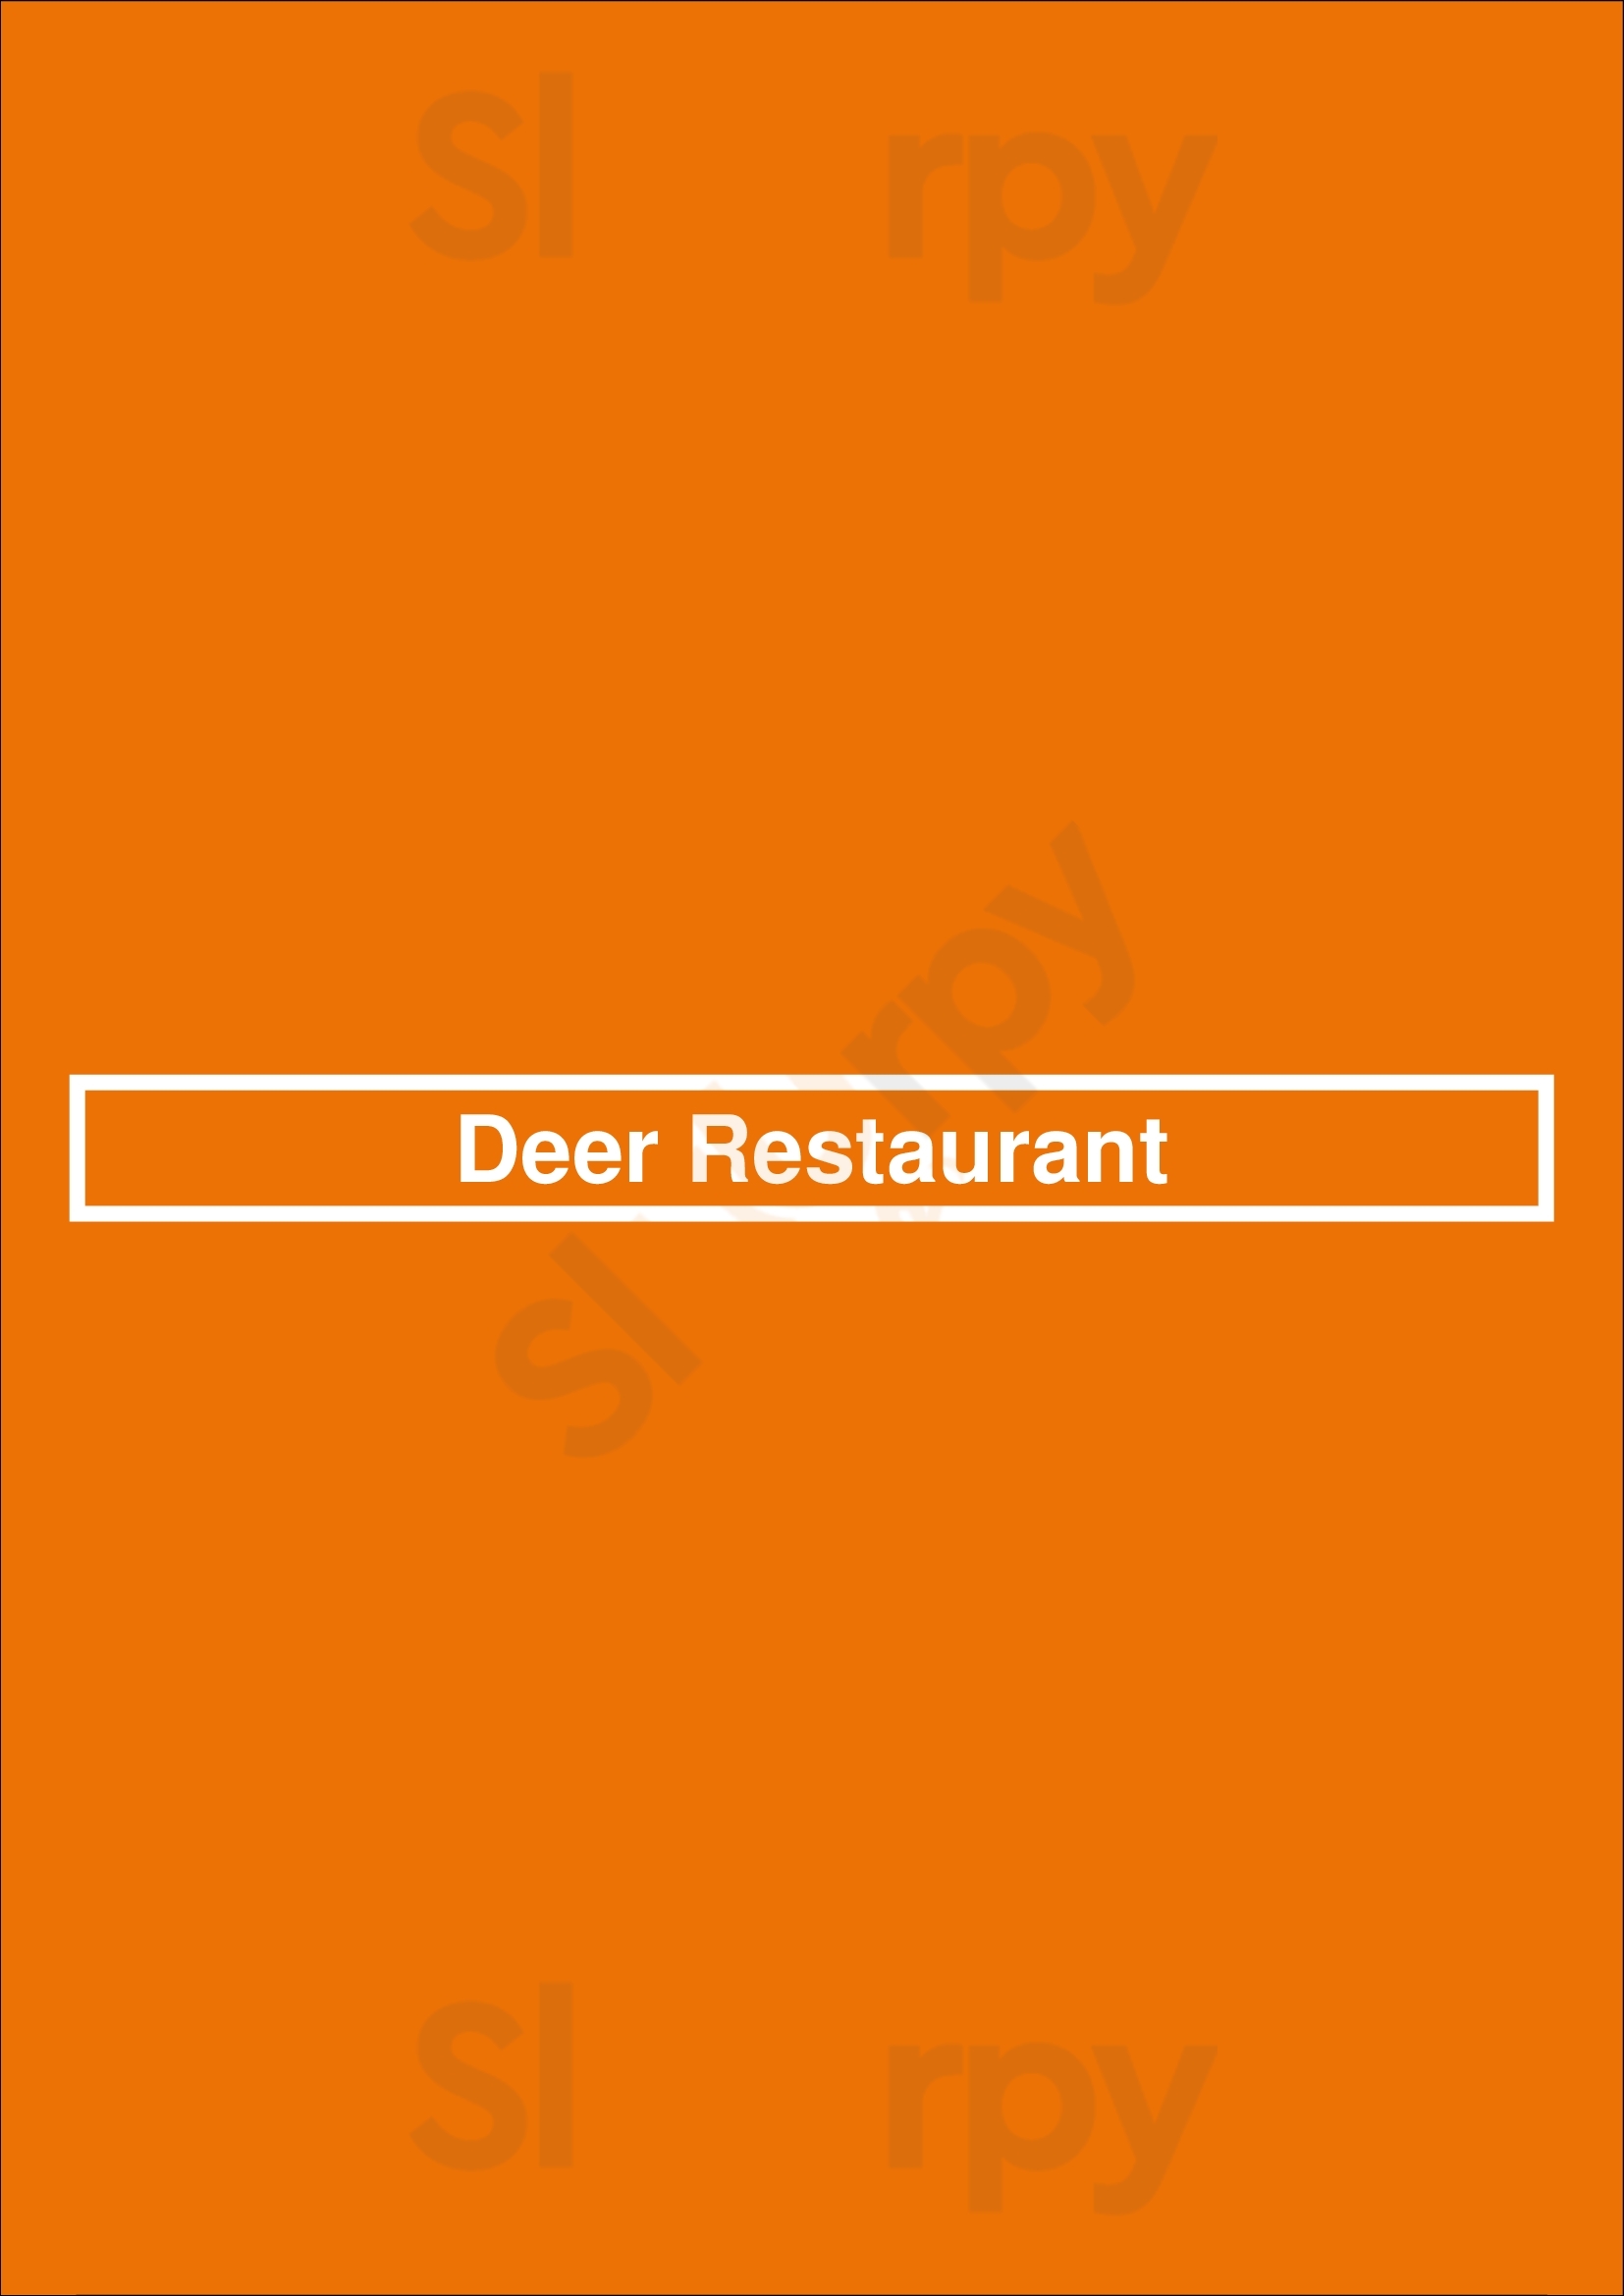 Deer Restaurant Praha Menu - 1